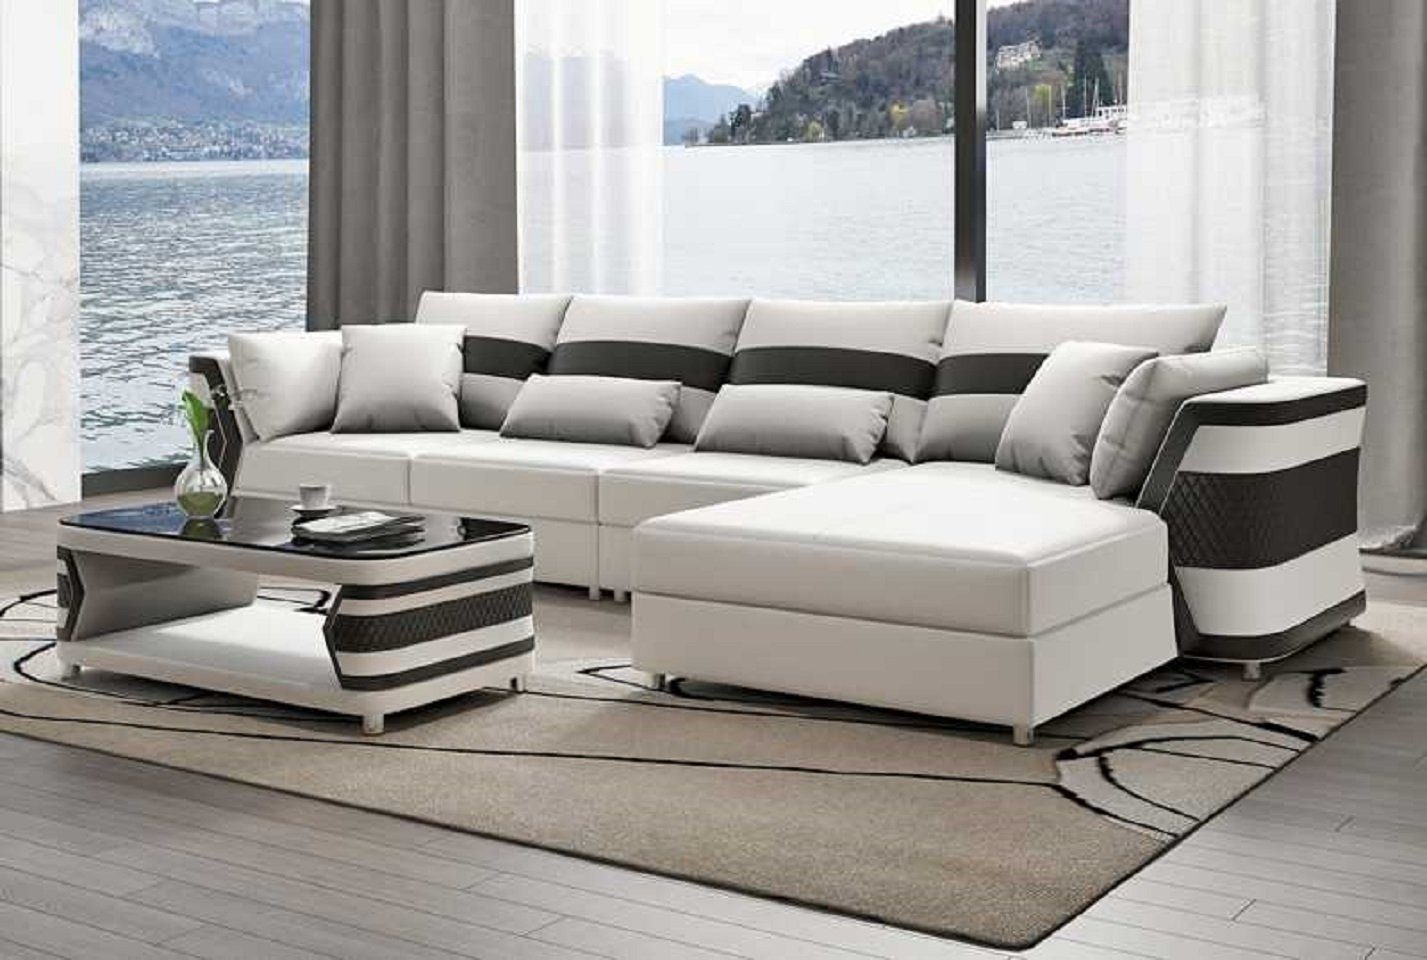 JVmoebel Ecksofa Wohnzimmer Ecksofa L Form Couch Sofa Luxus Moderne Eckgarnitur, 3 Teile, Made in Europe Weiß